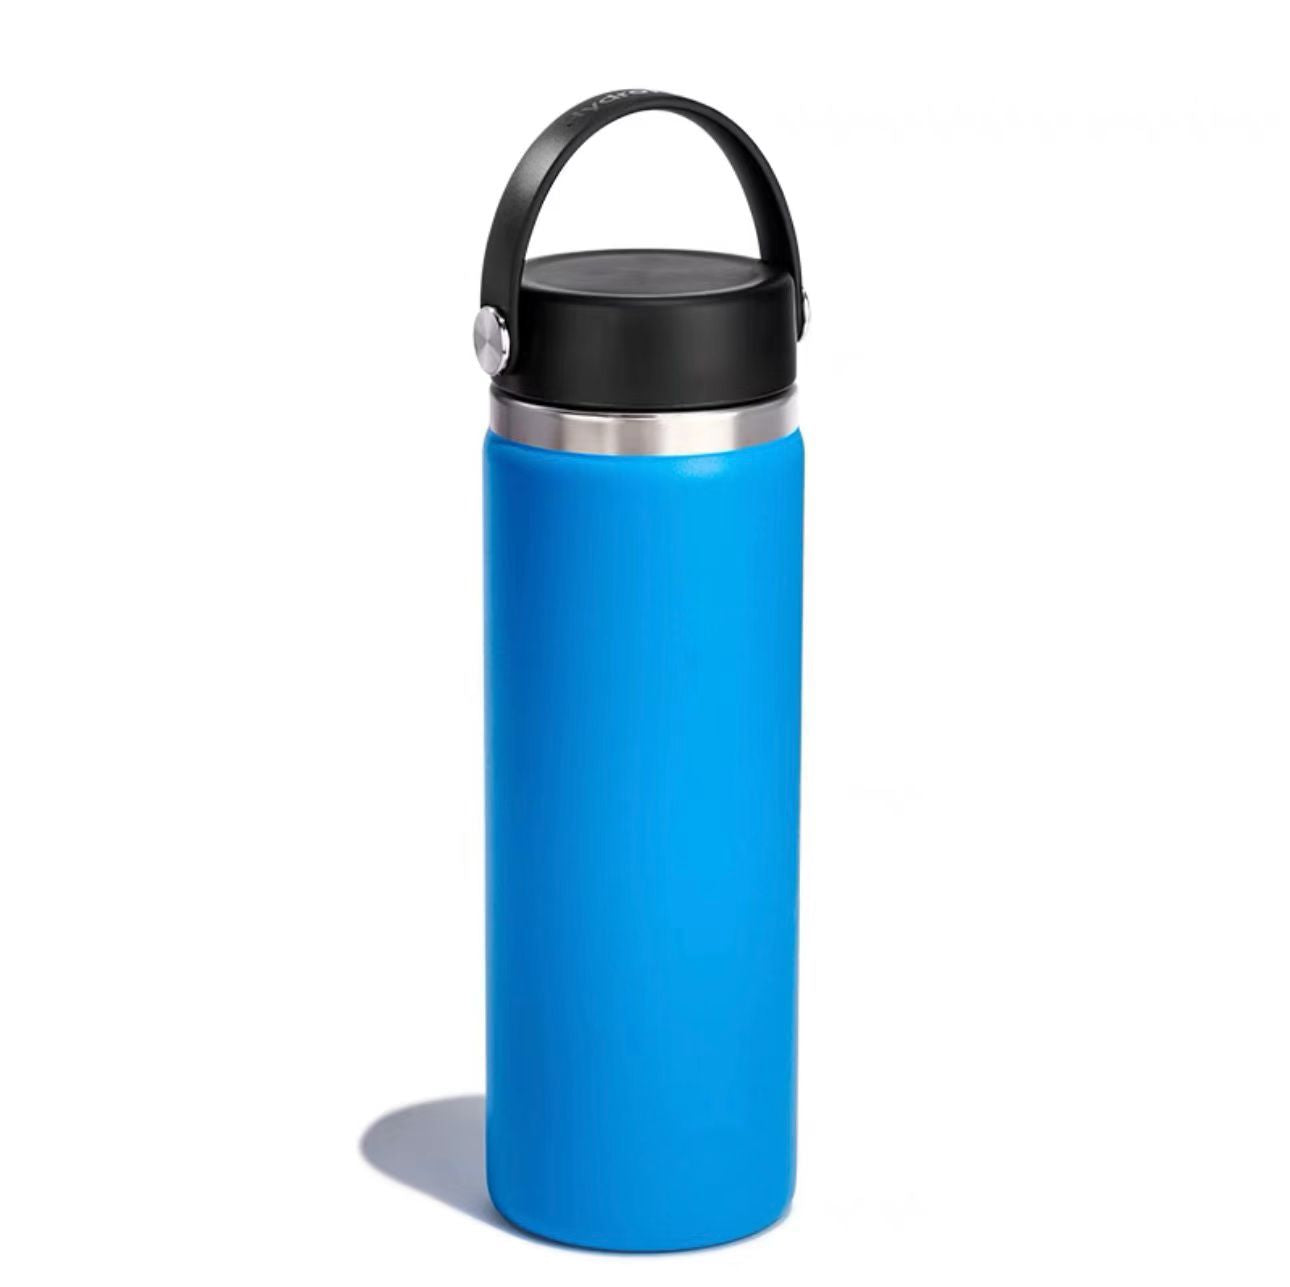 22oz Insulated Water Bottle with Straw - Powder Coated Navy Blue –  SunwillBiz